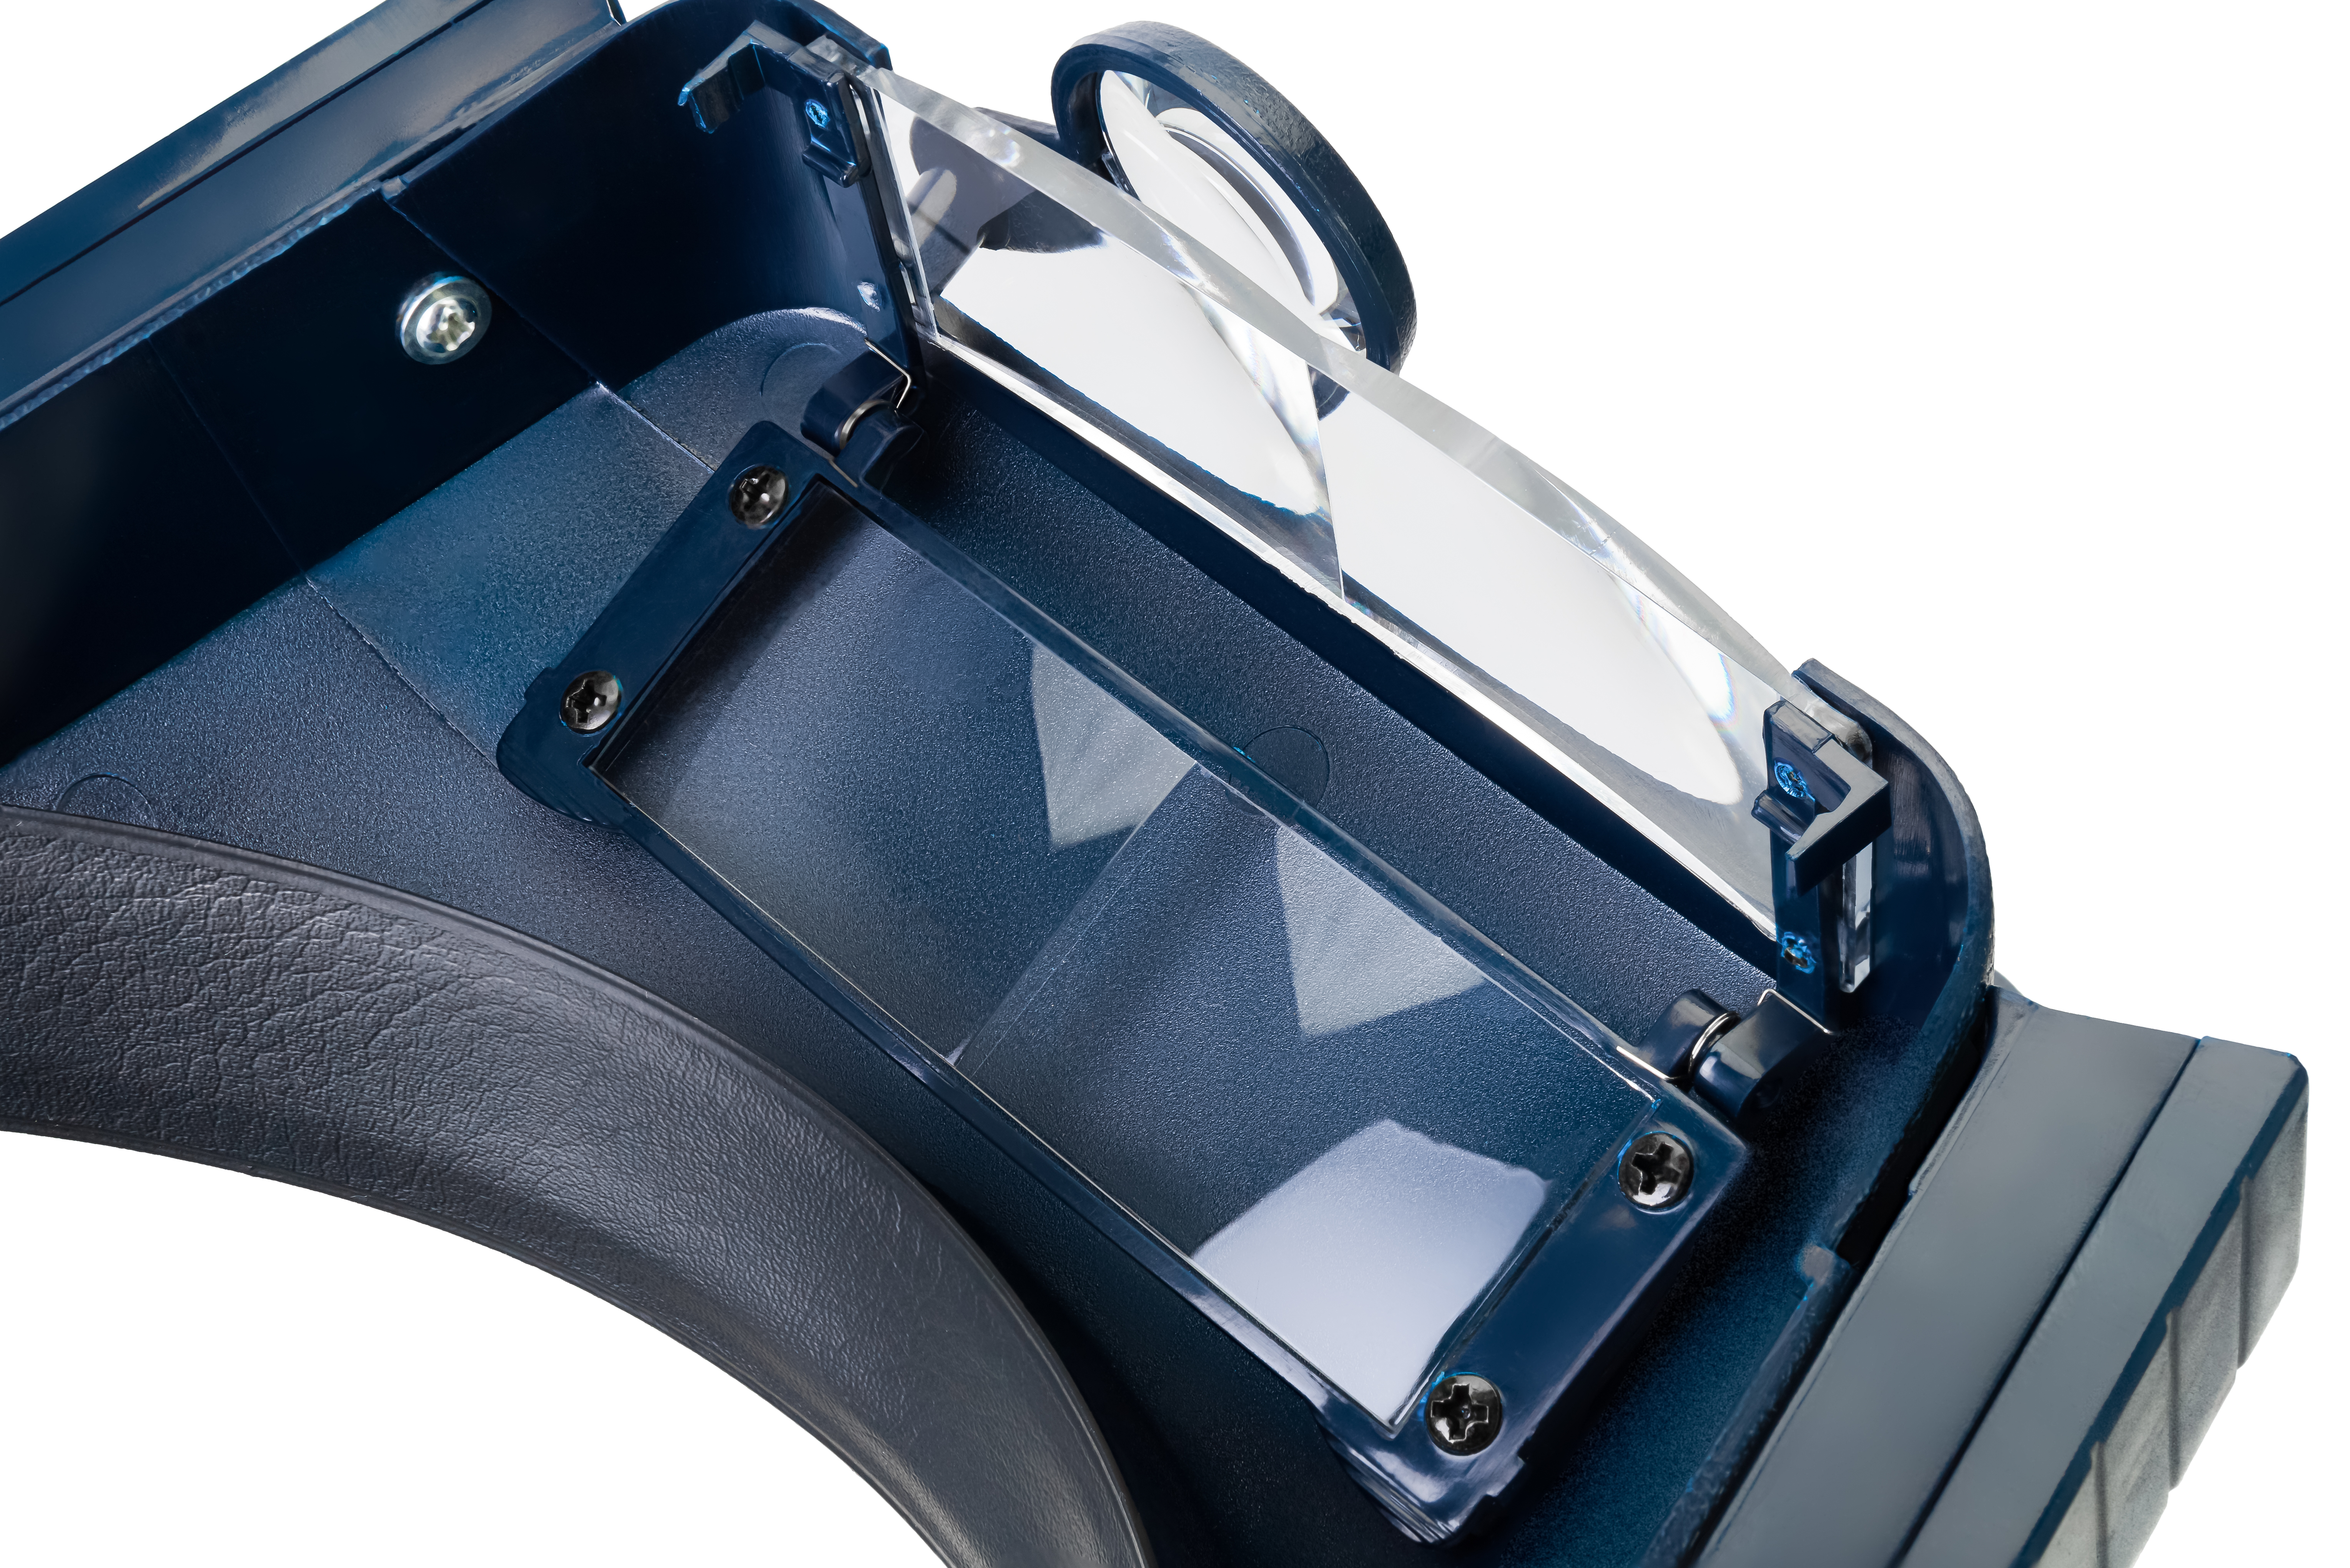 Optická sústava lupy Discovery Crafts DHR 10 sa skladá z 2 obdåžnikových šošoviek nasadených za sebou a 1 kruhovej šošovky s výklopným dizajnom.